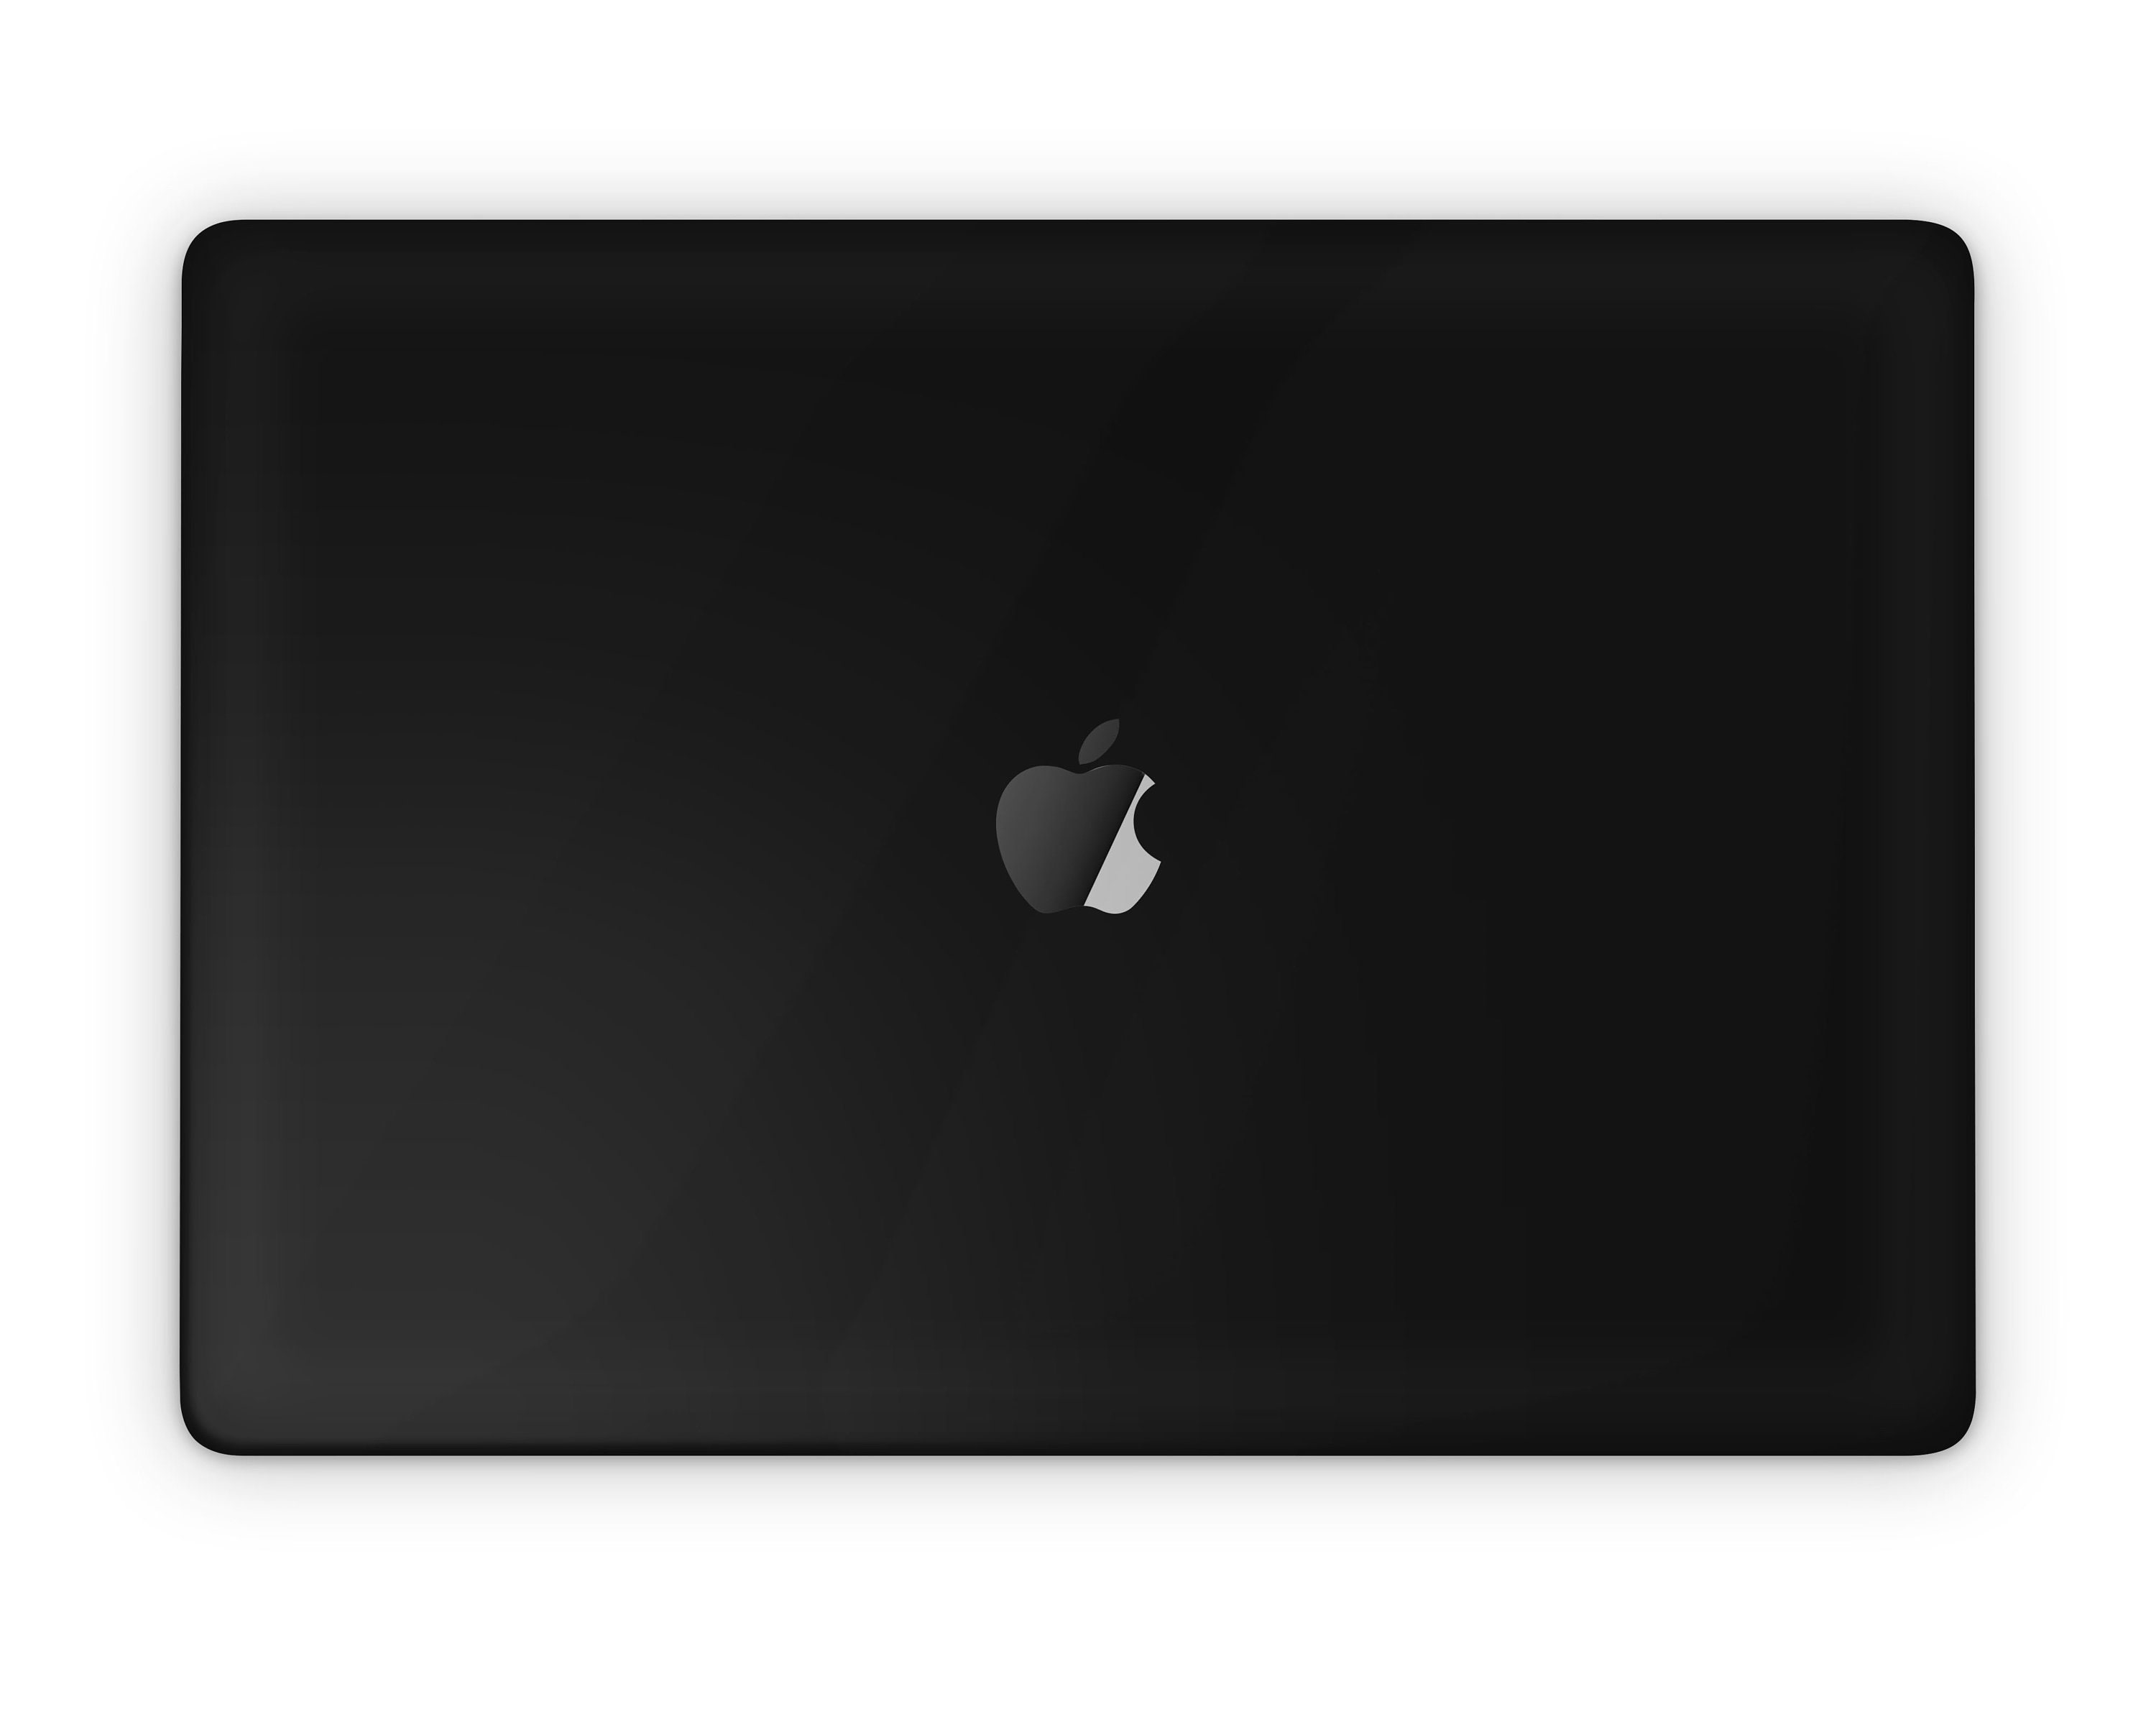 Næsten død Caius korruption Matte Black MacBook Pro Skin Solid Black Minimal Sleek - Etsy